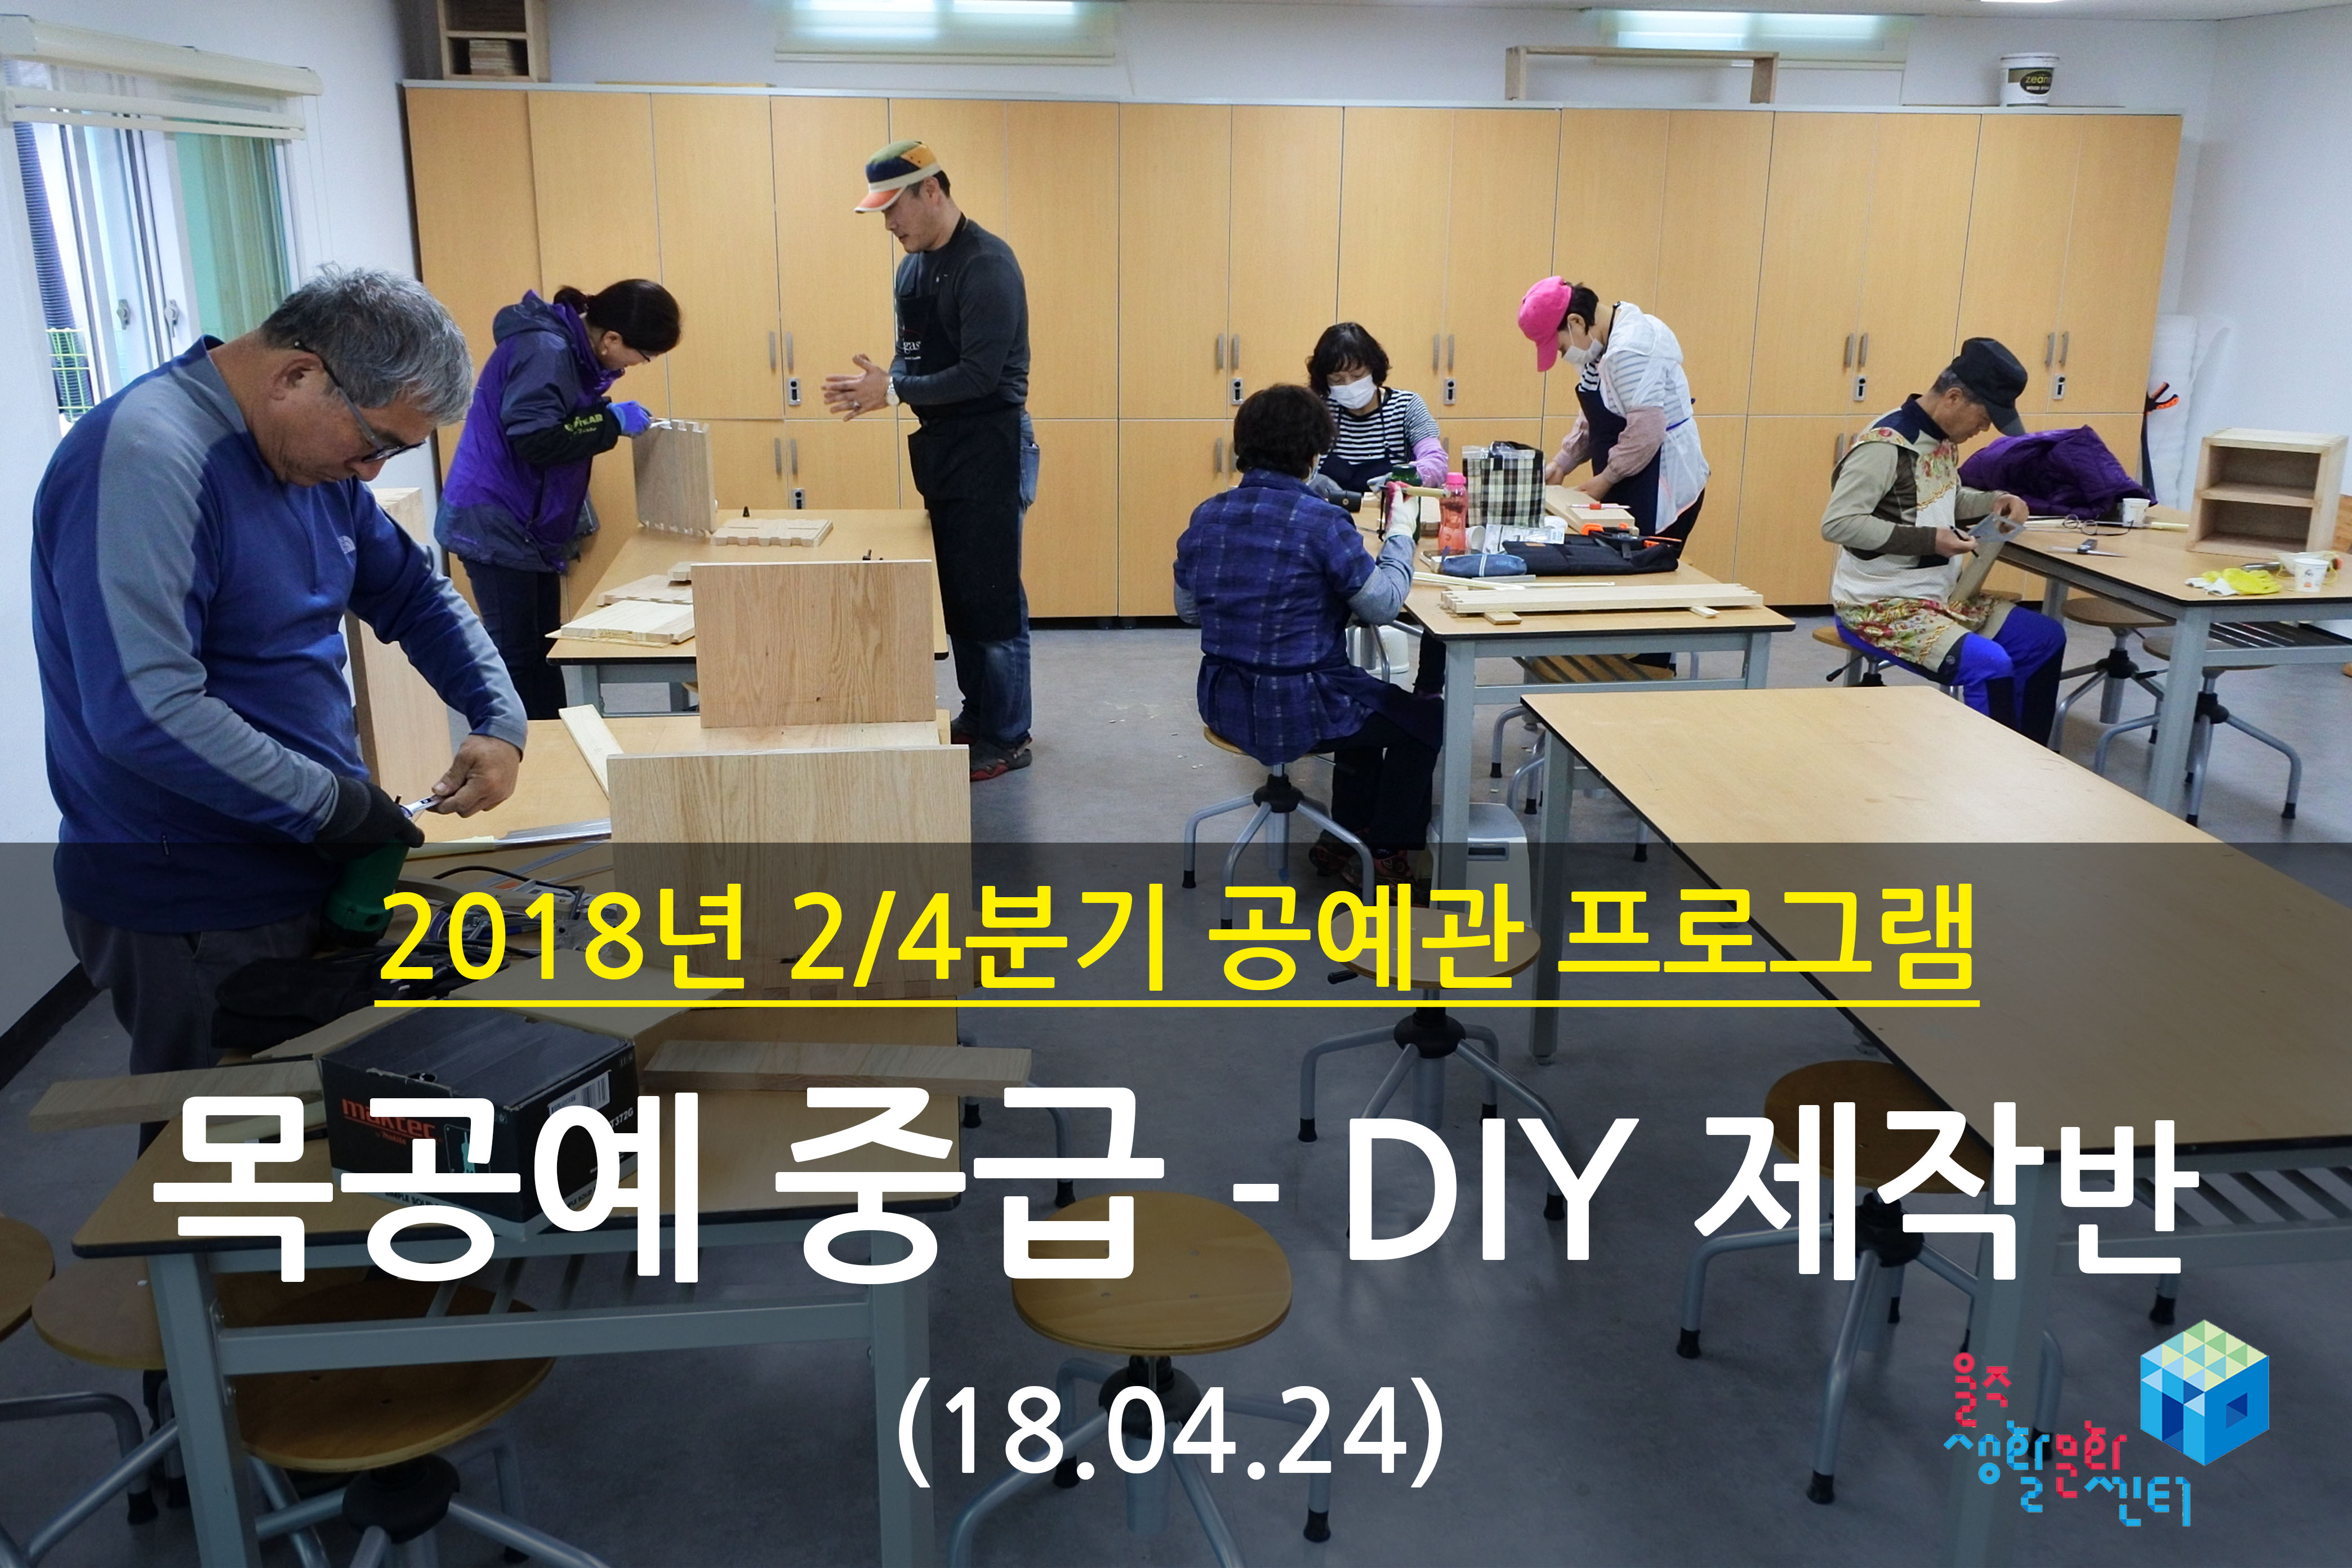 2018.04.24 _ 목공예 중급 - DIY 제작반 _ 2/4분기 4주차 수업